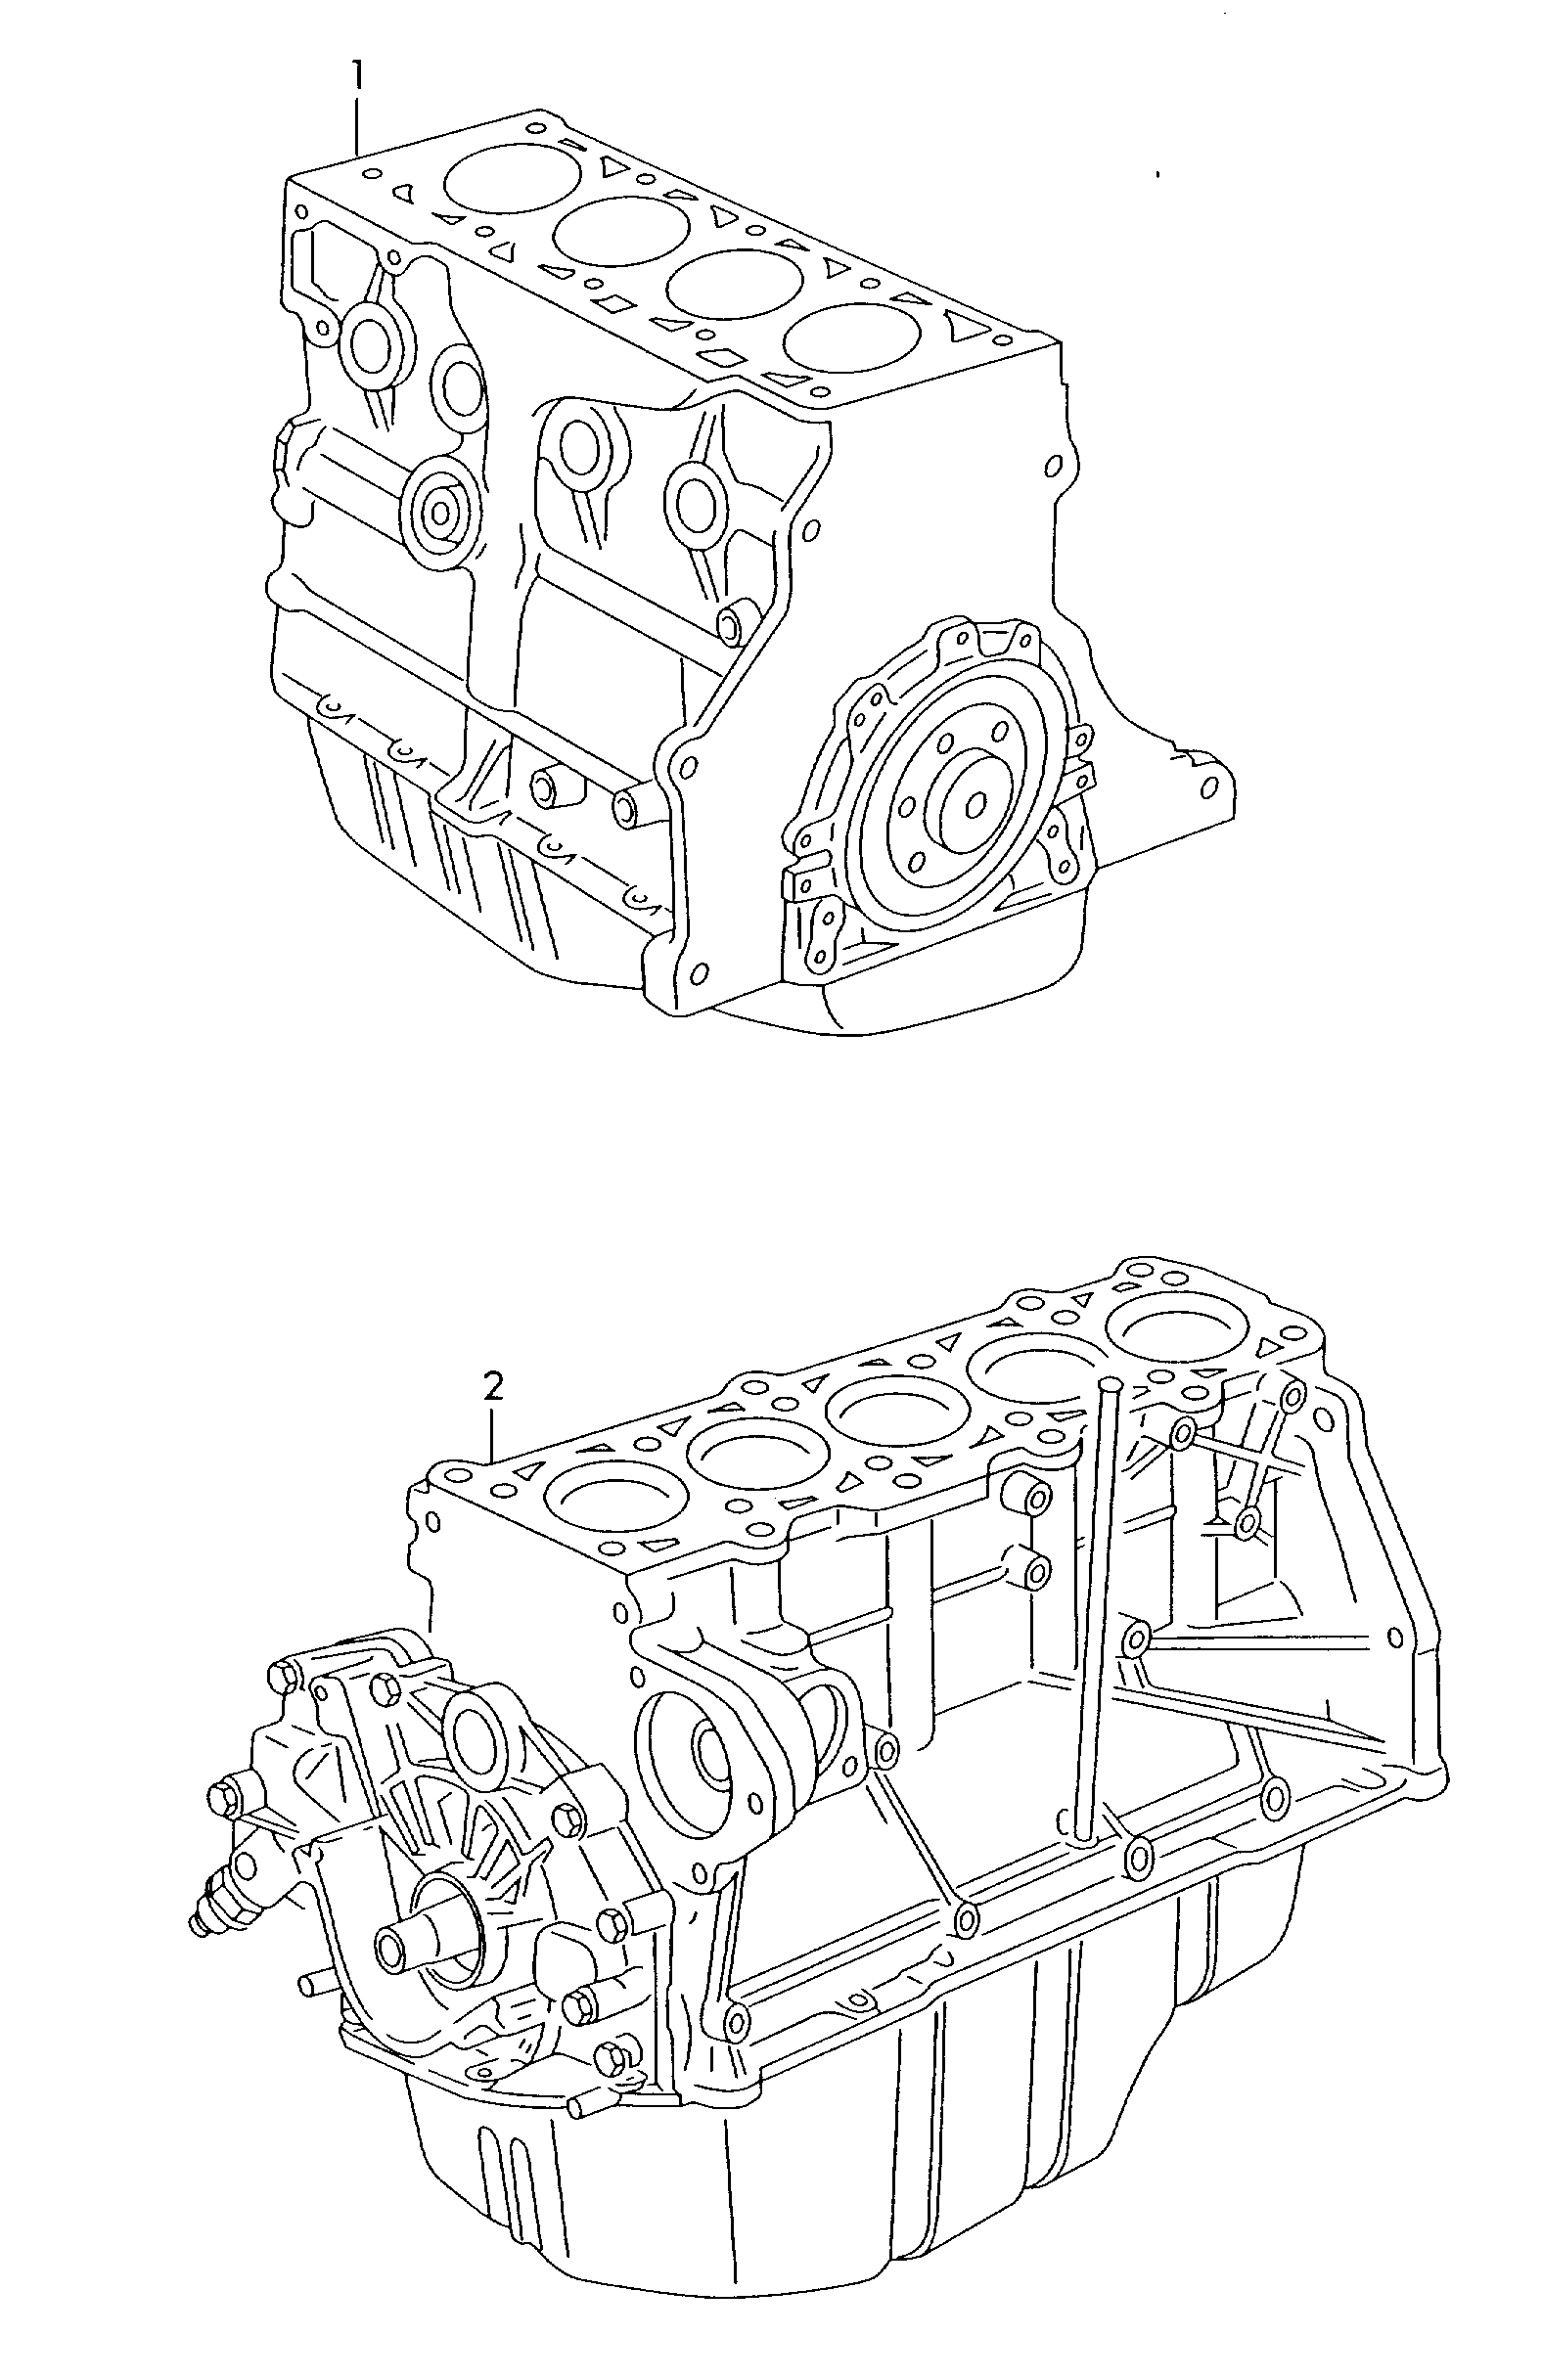 Teilmotor mit Kurbelwelle,<br>Kolben, Ölpumpe und Ölwanne  - Typ 2 - t2